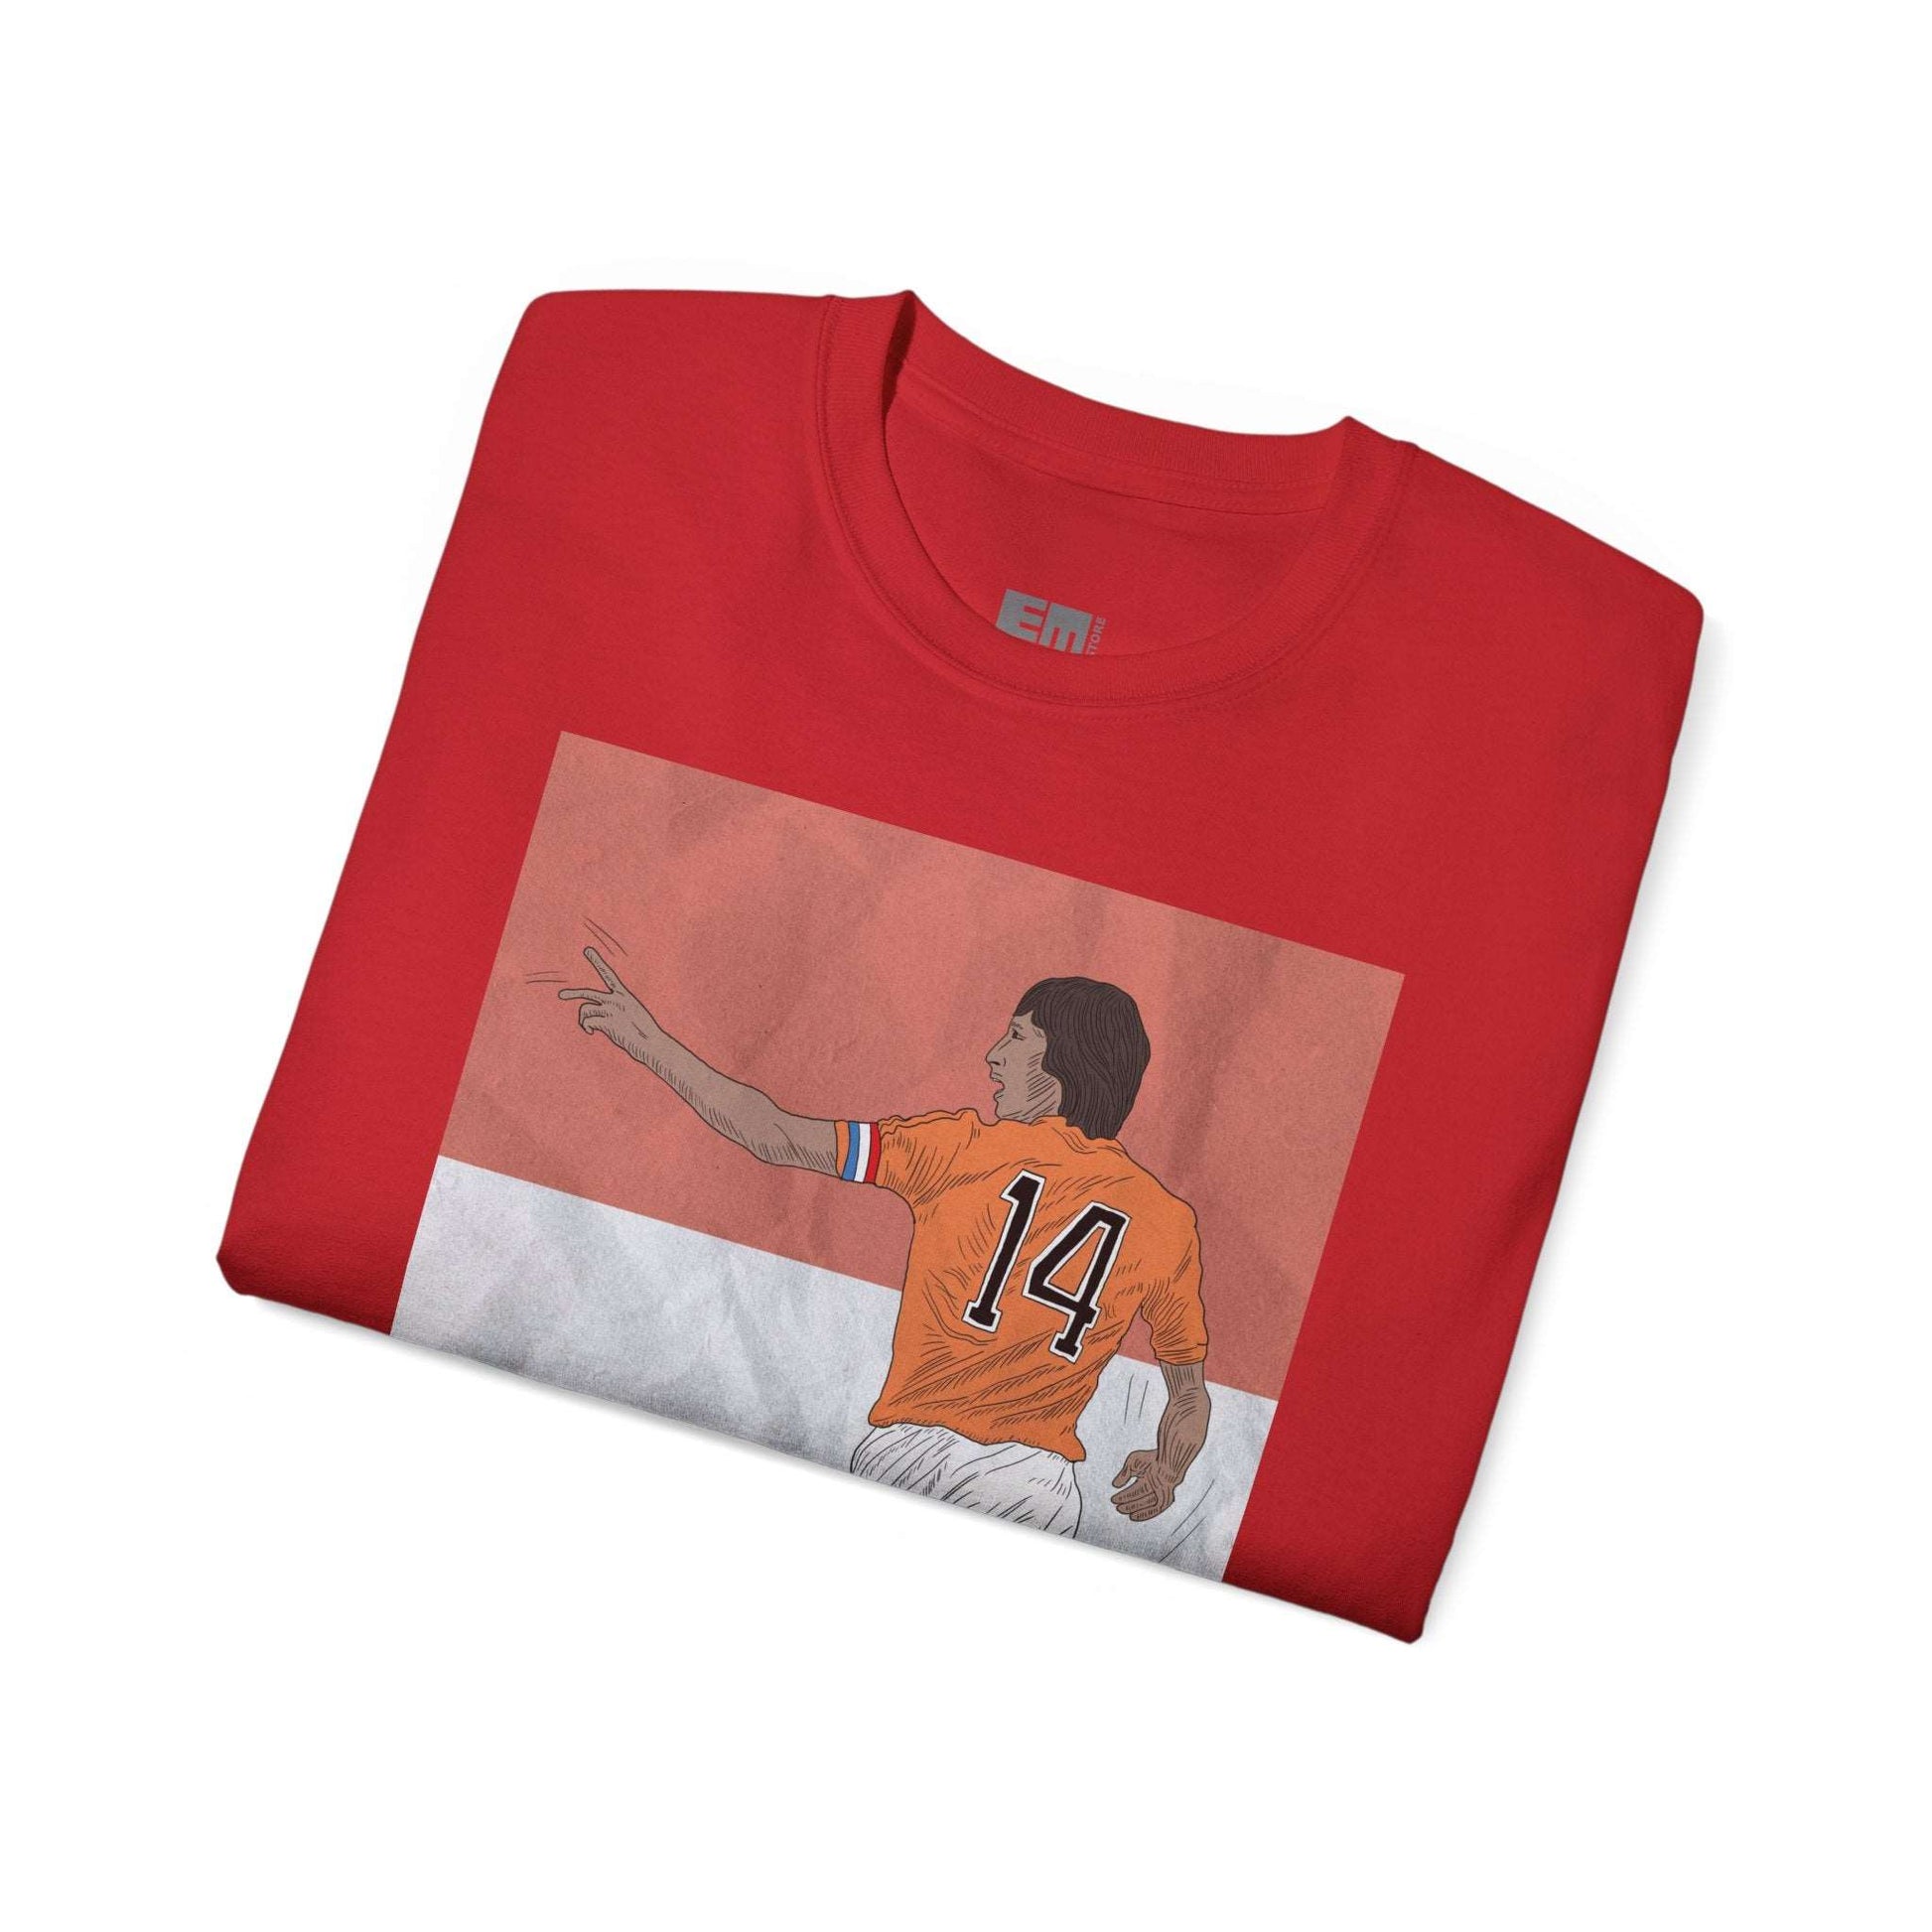 T-shirt Cruyff playing soccer